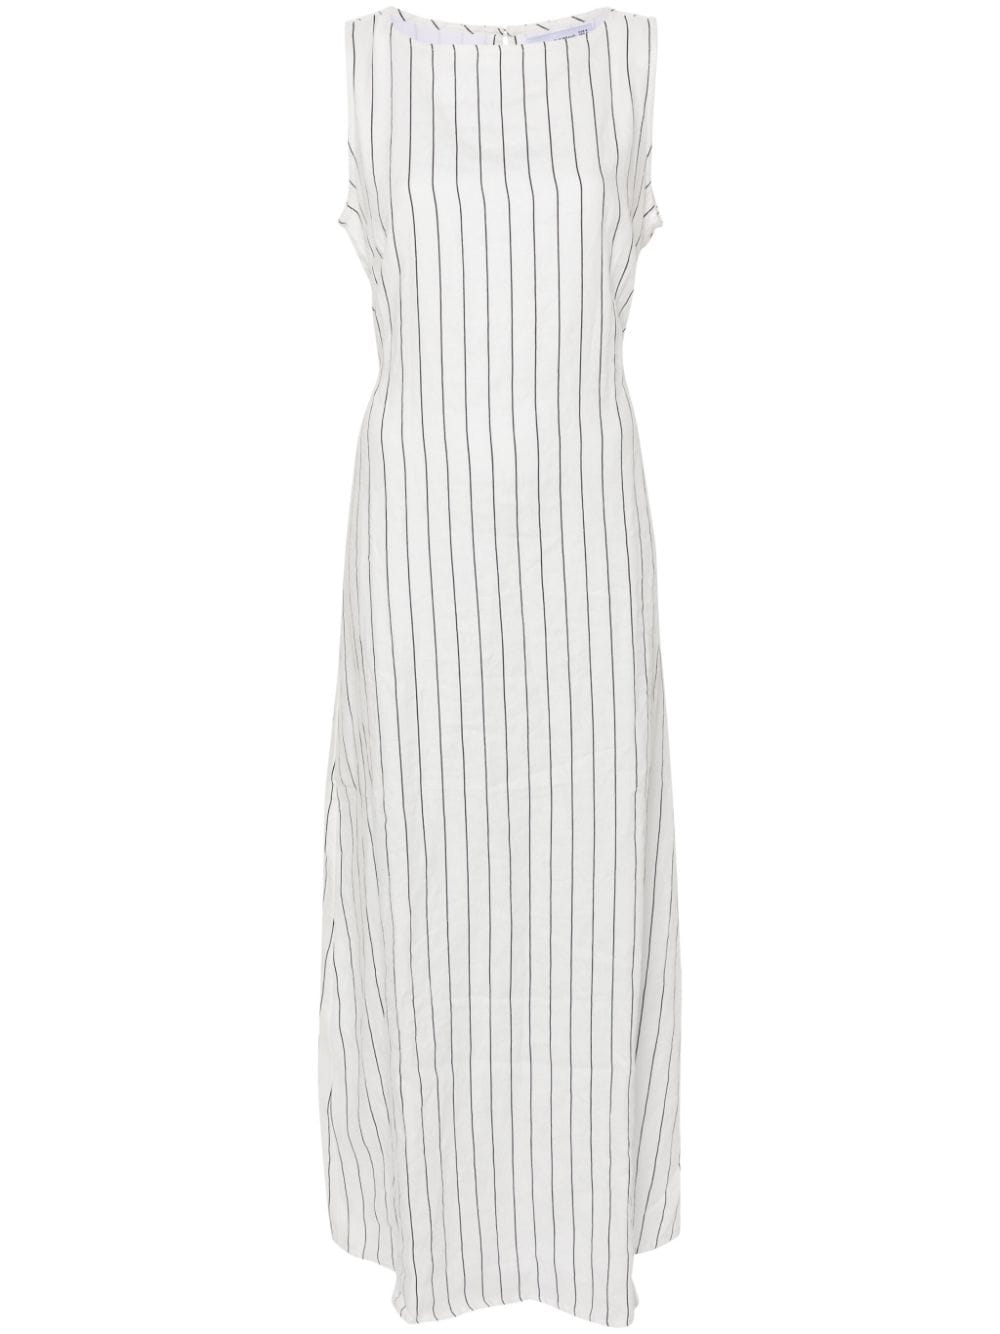 Faithfull The Brand Nahna Striped Linen Dress In White